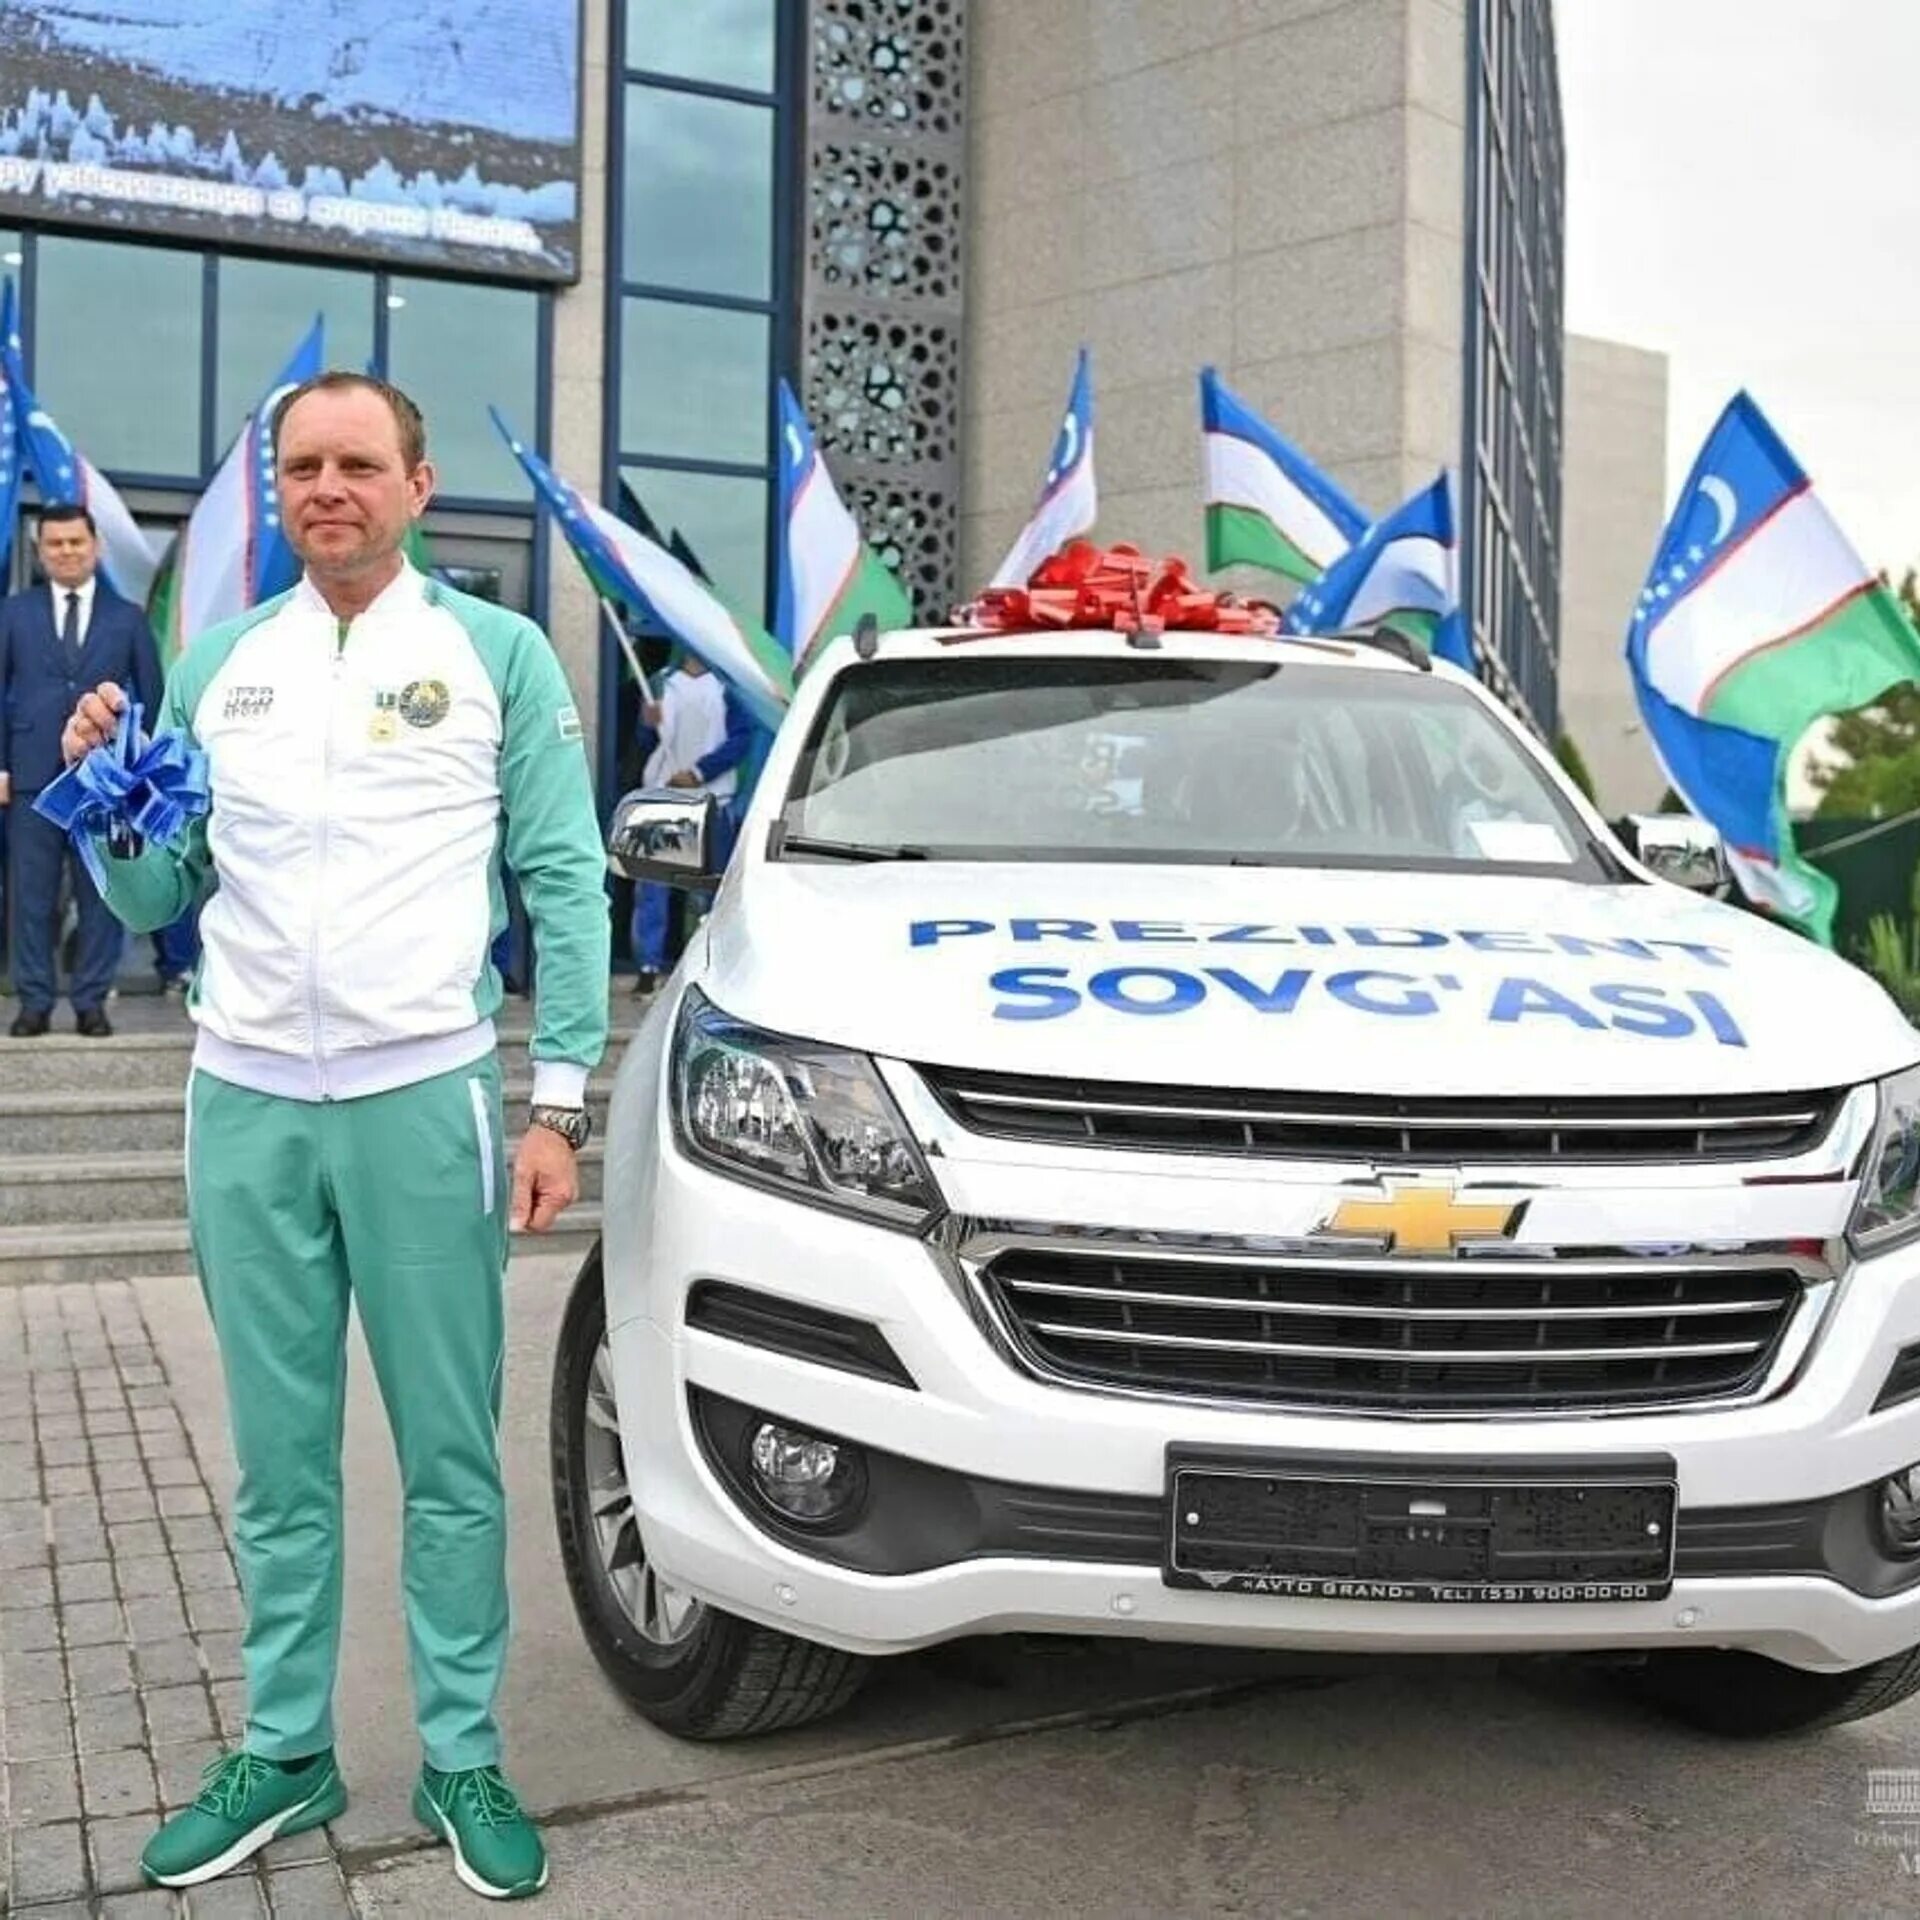 Узбекистан станет россией. Автомобиль президента Узбекистана. Флаг Узбекистана на машине.